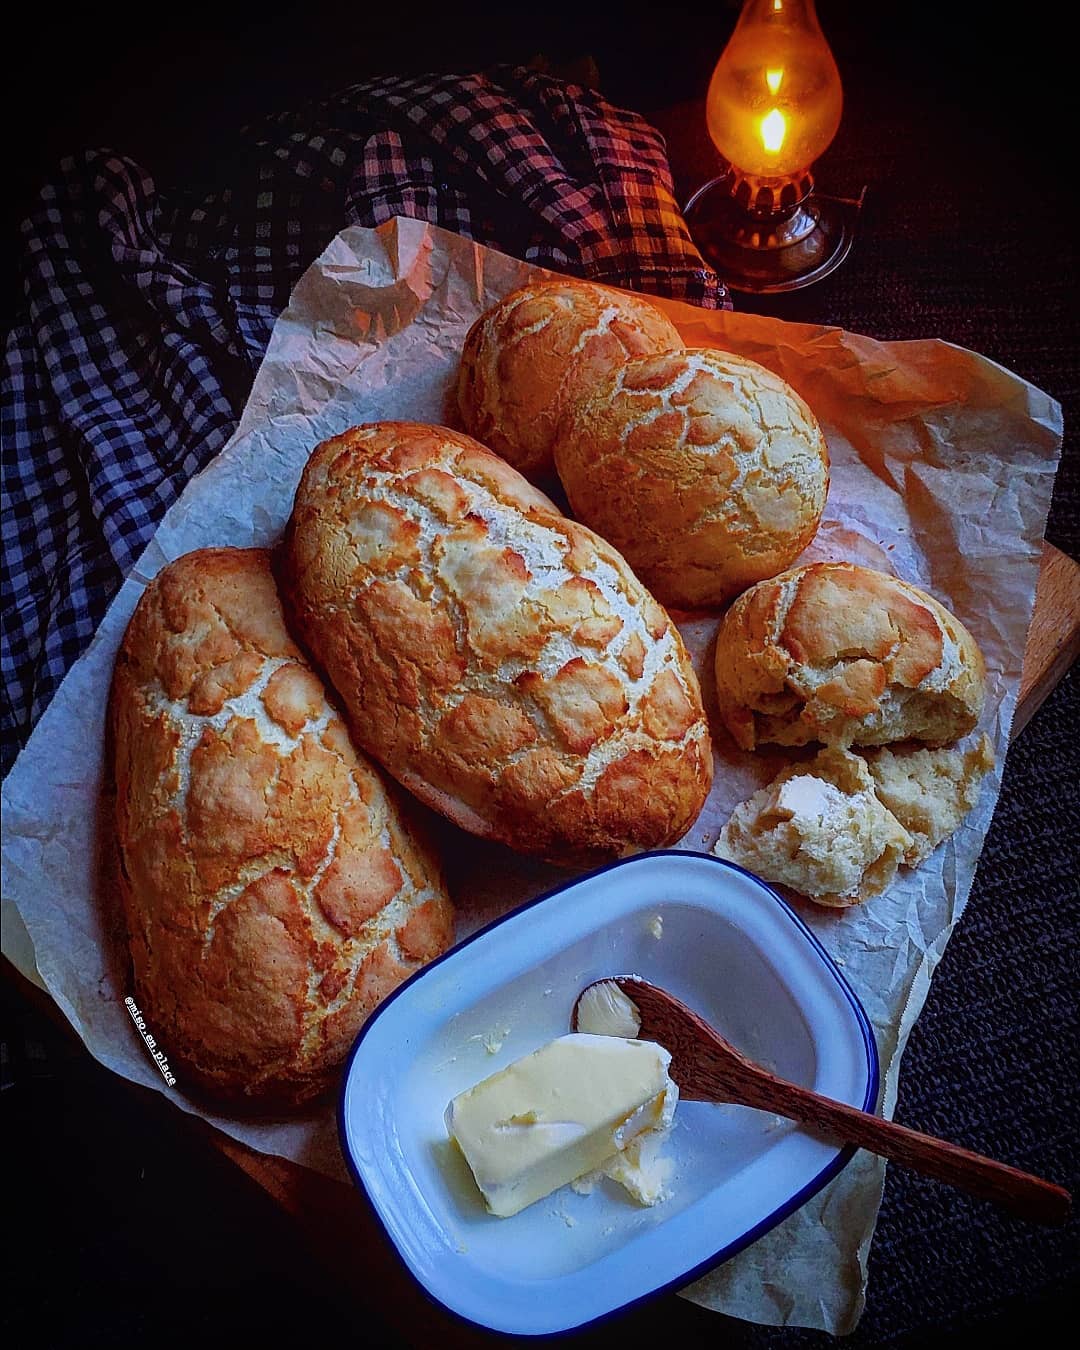 Loại bánh mì này giờ đã trở nên phổ biến ở nhiều quốc gia khác nhau. Ảnh: @miso.en.place